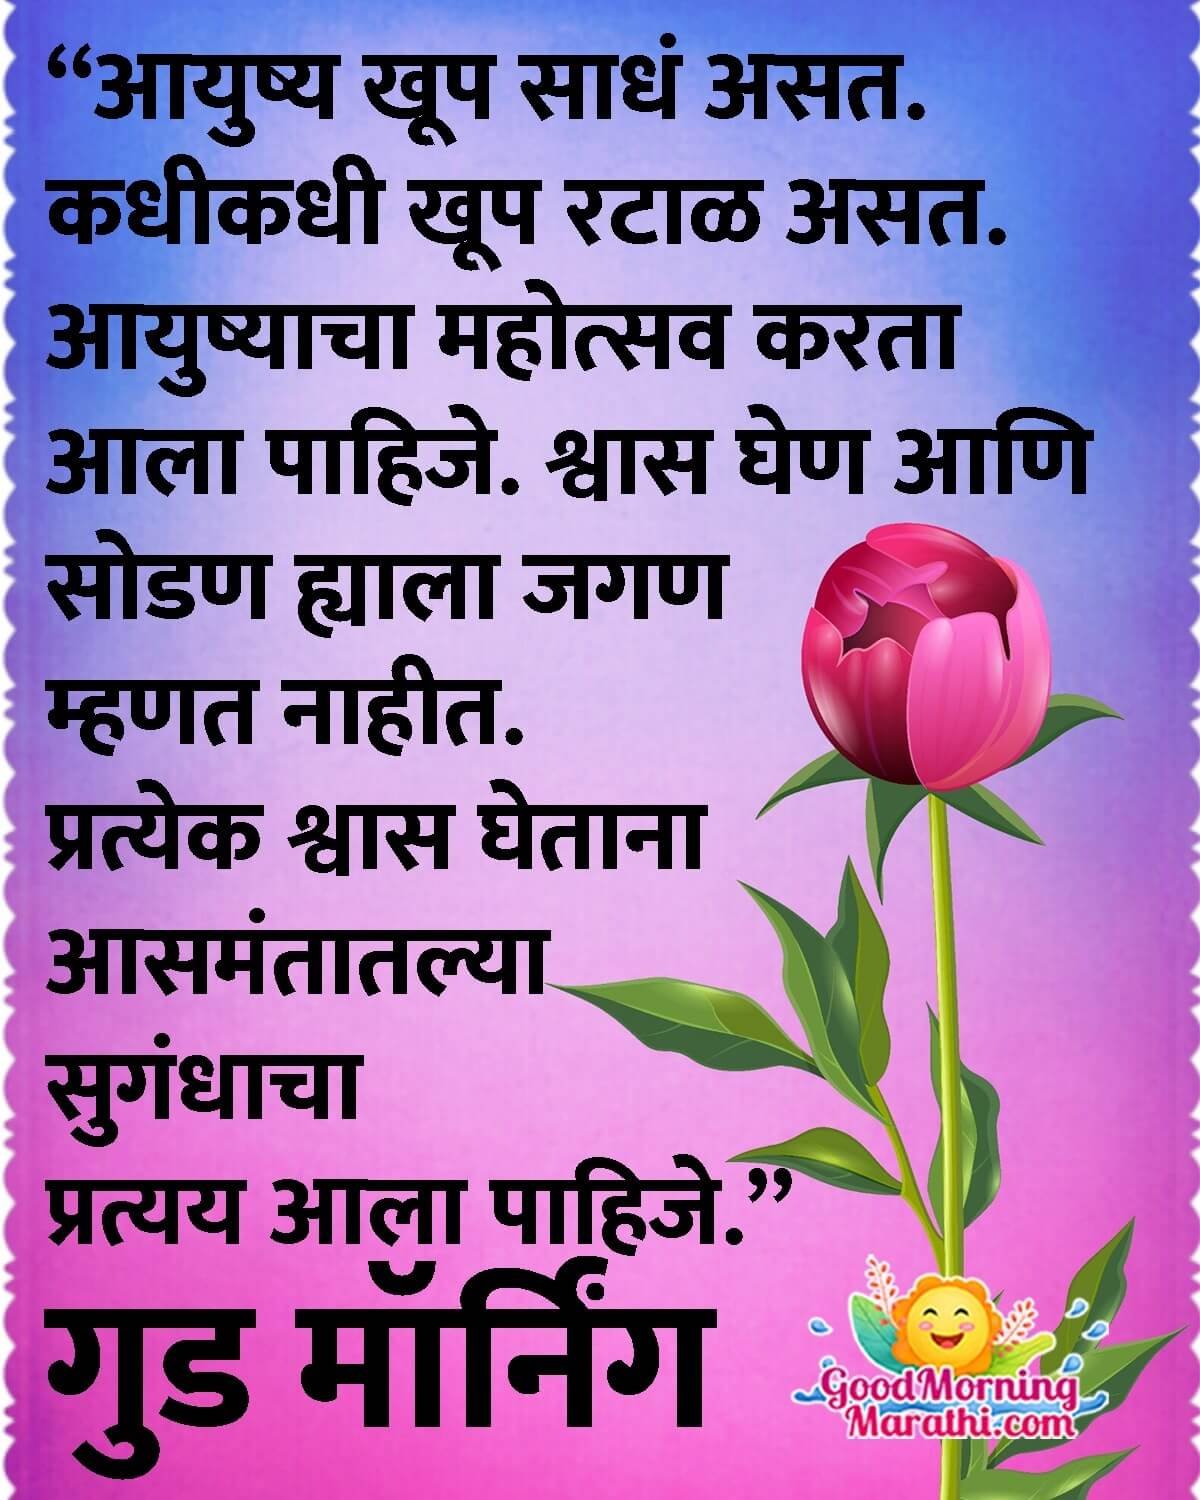 Good Morning Marathi Life Quote